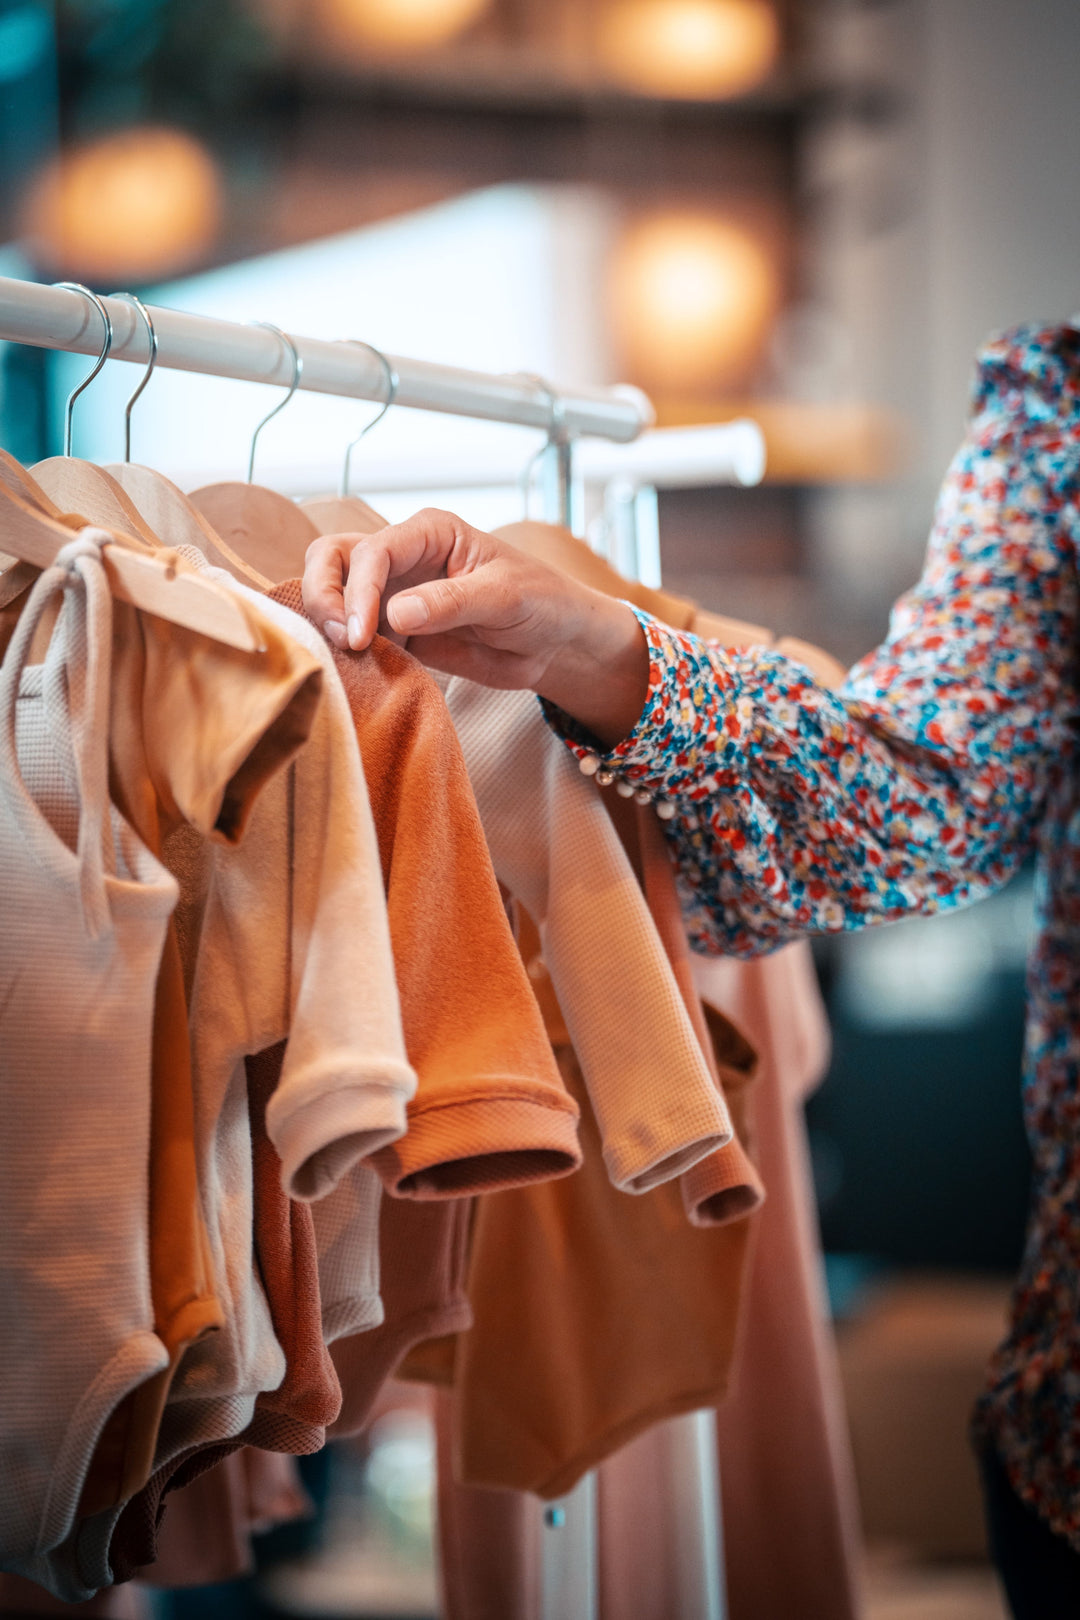 Économie circulaire : Et si vous donniez une seconde vie à vos vêtements ?